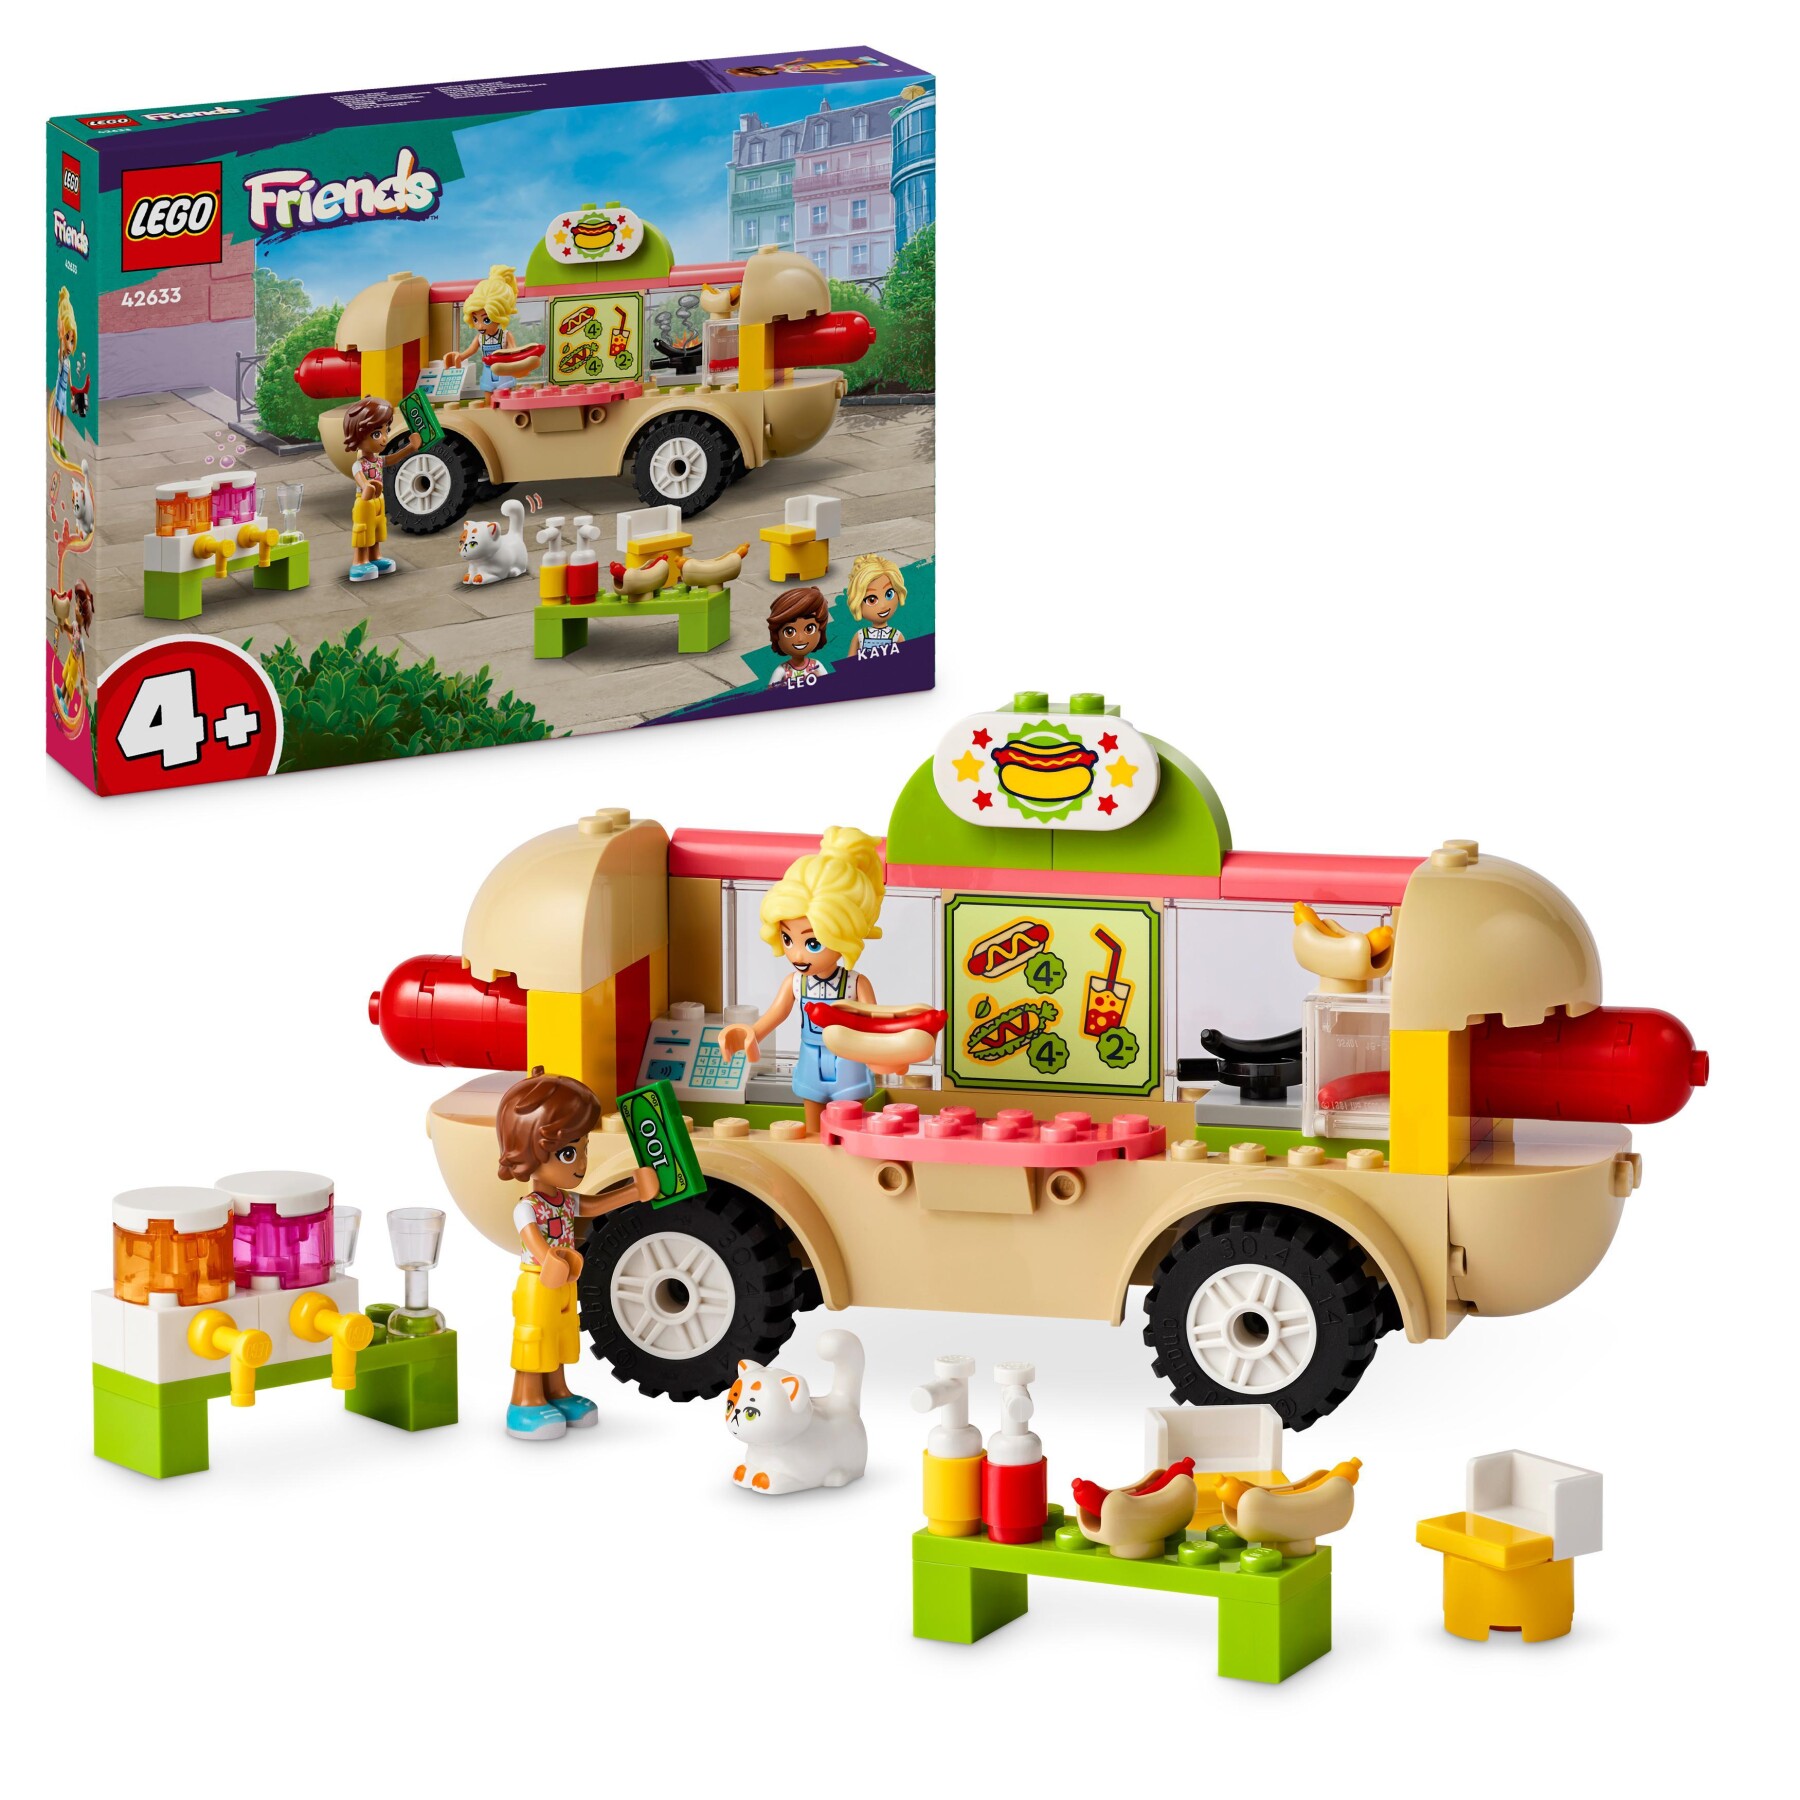 Lego friends 42633 food truck hot-dog, giochi per bambini 4+, piccolo camion giocattolo con cucina, 2 mini bamboline e gatto